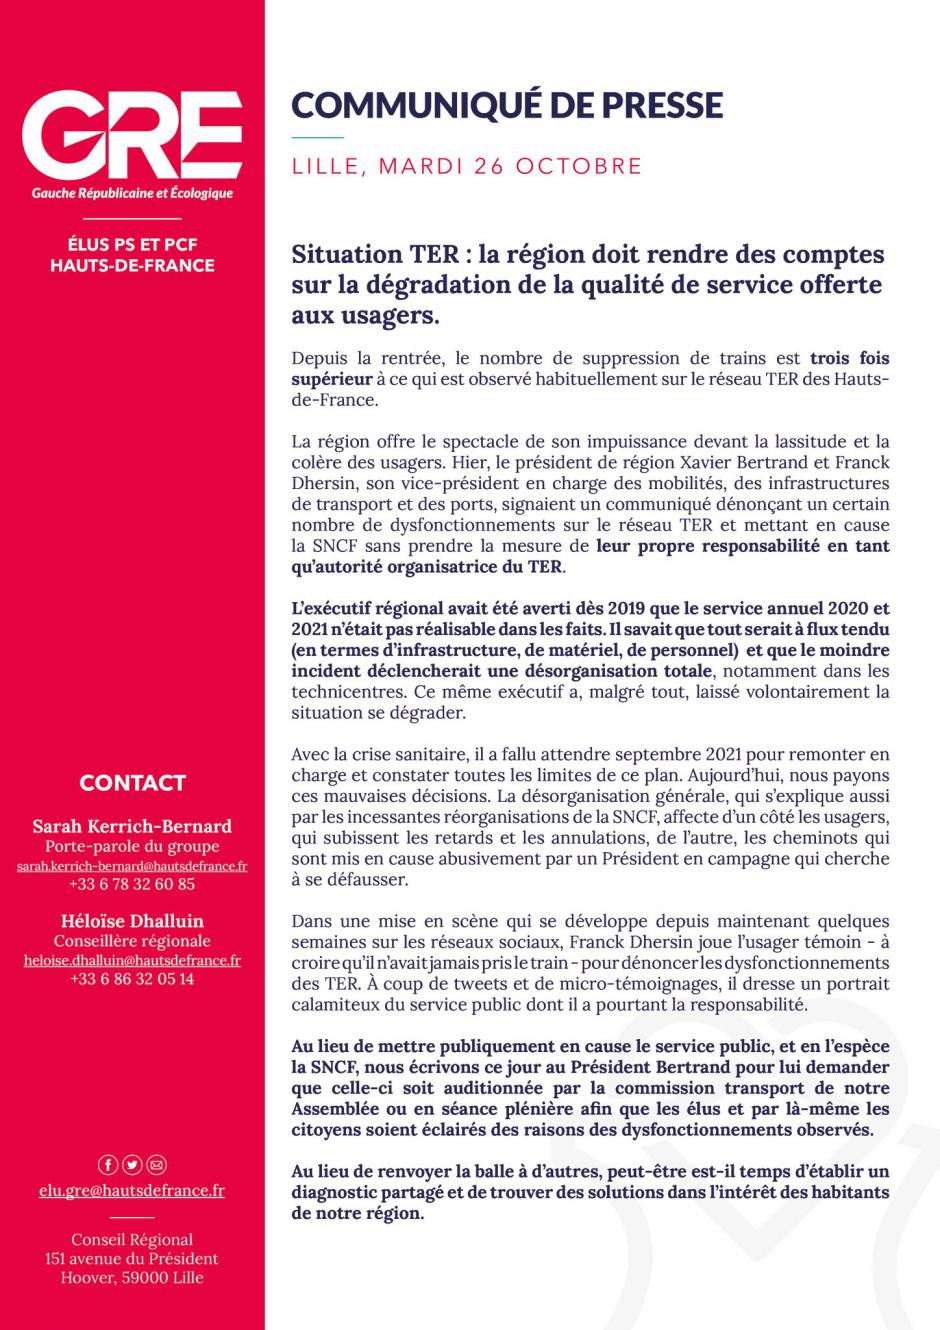 Situation TER : la Région doit rendre des comptes sur la dégradation de la qualité de service offerte aux usagers - Groupe GRE au Conseil régional Hauts-de-France, 26 octobre 2021